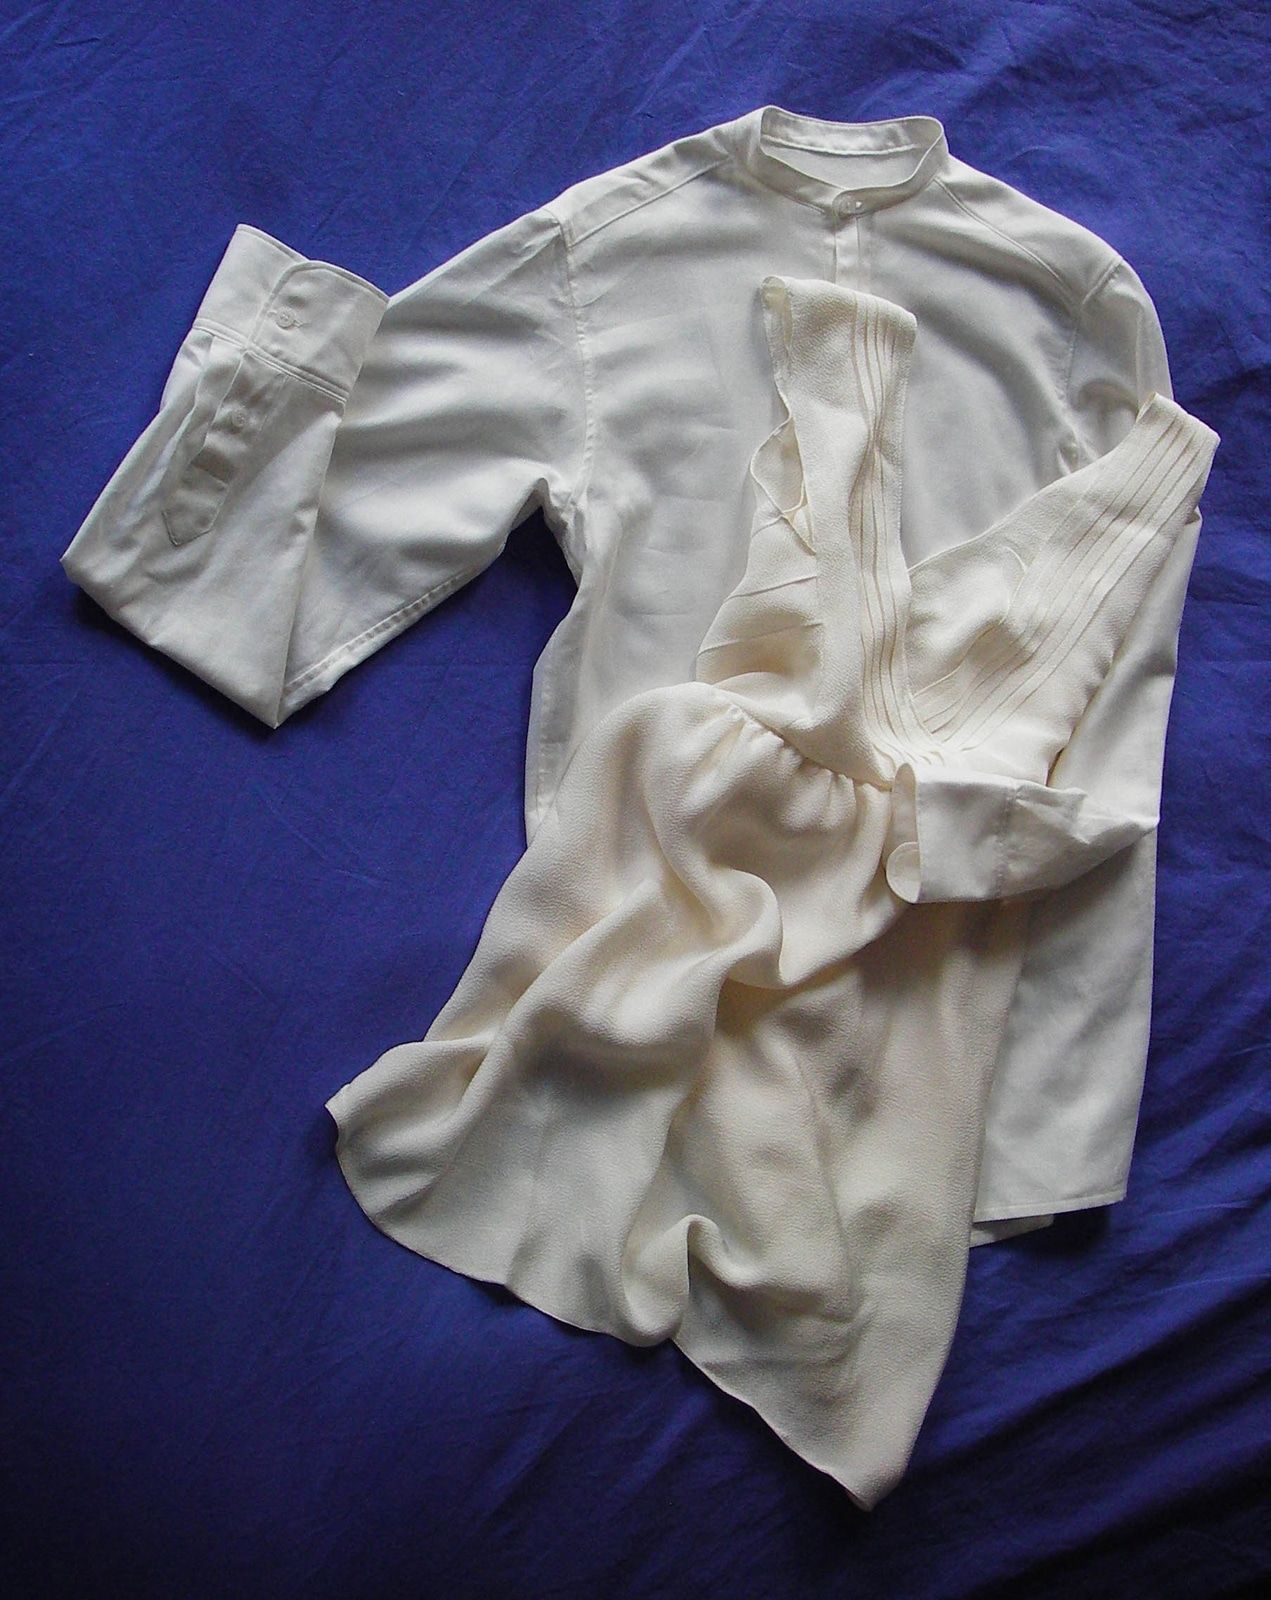 La valse des maries - Robe en crepe de soie ecru - Details de plis - Dos nu et plisse - Alice C